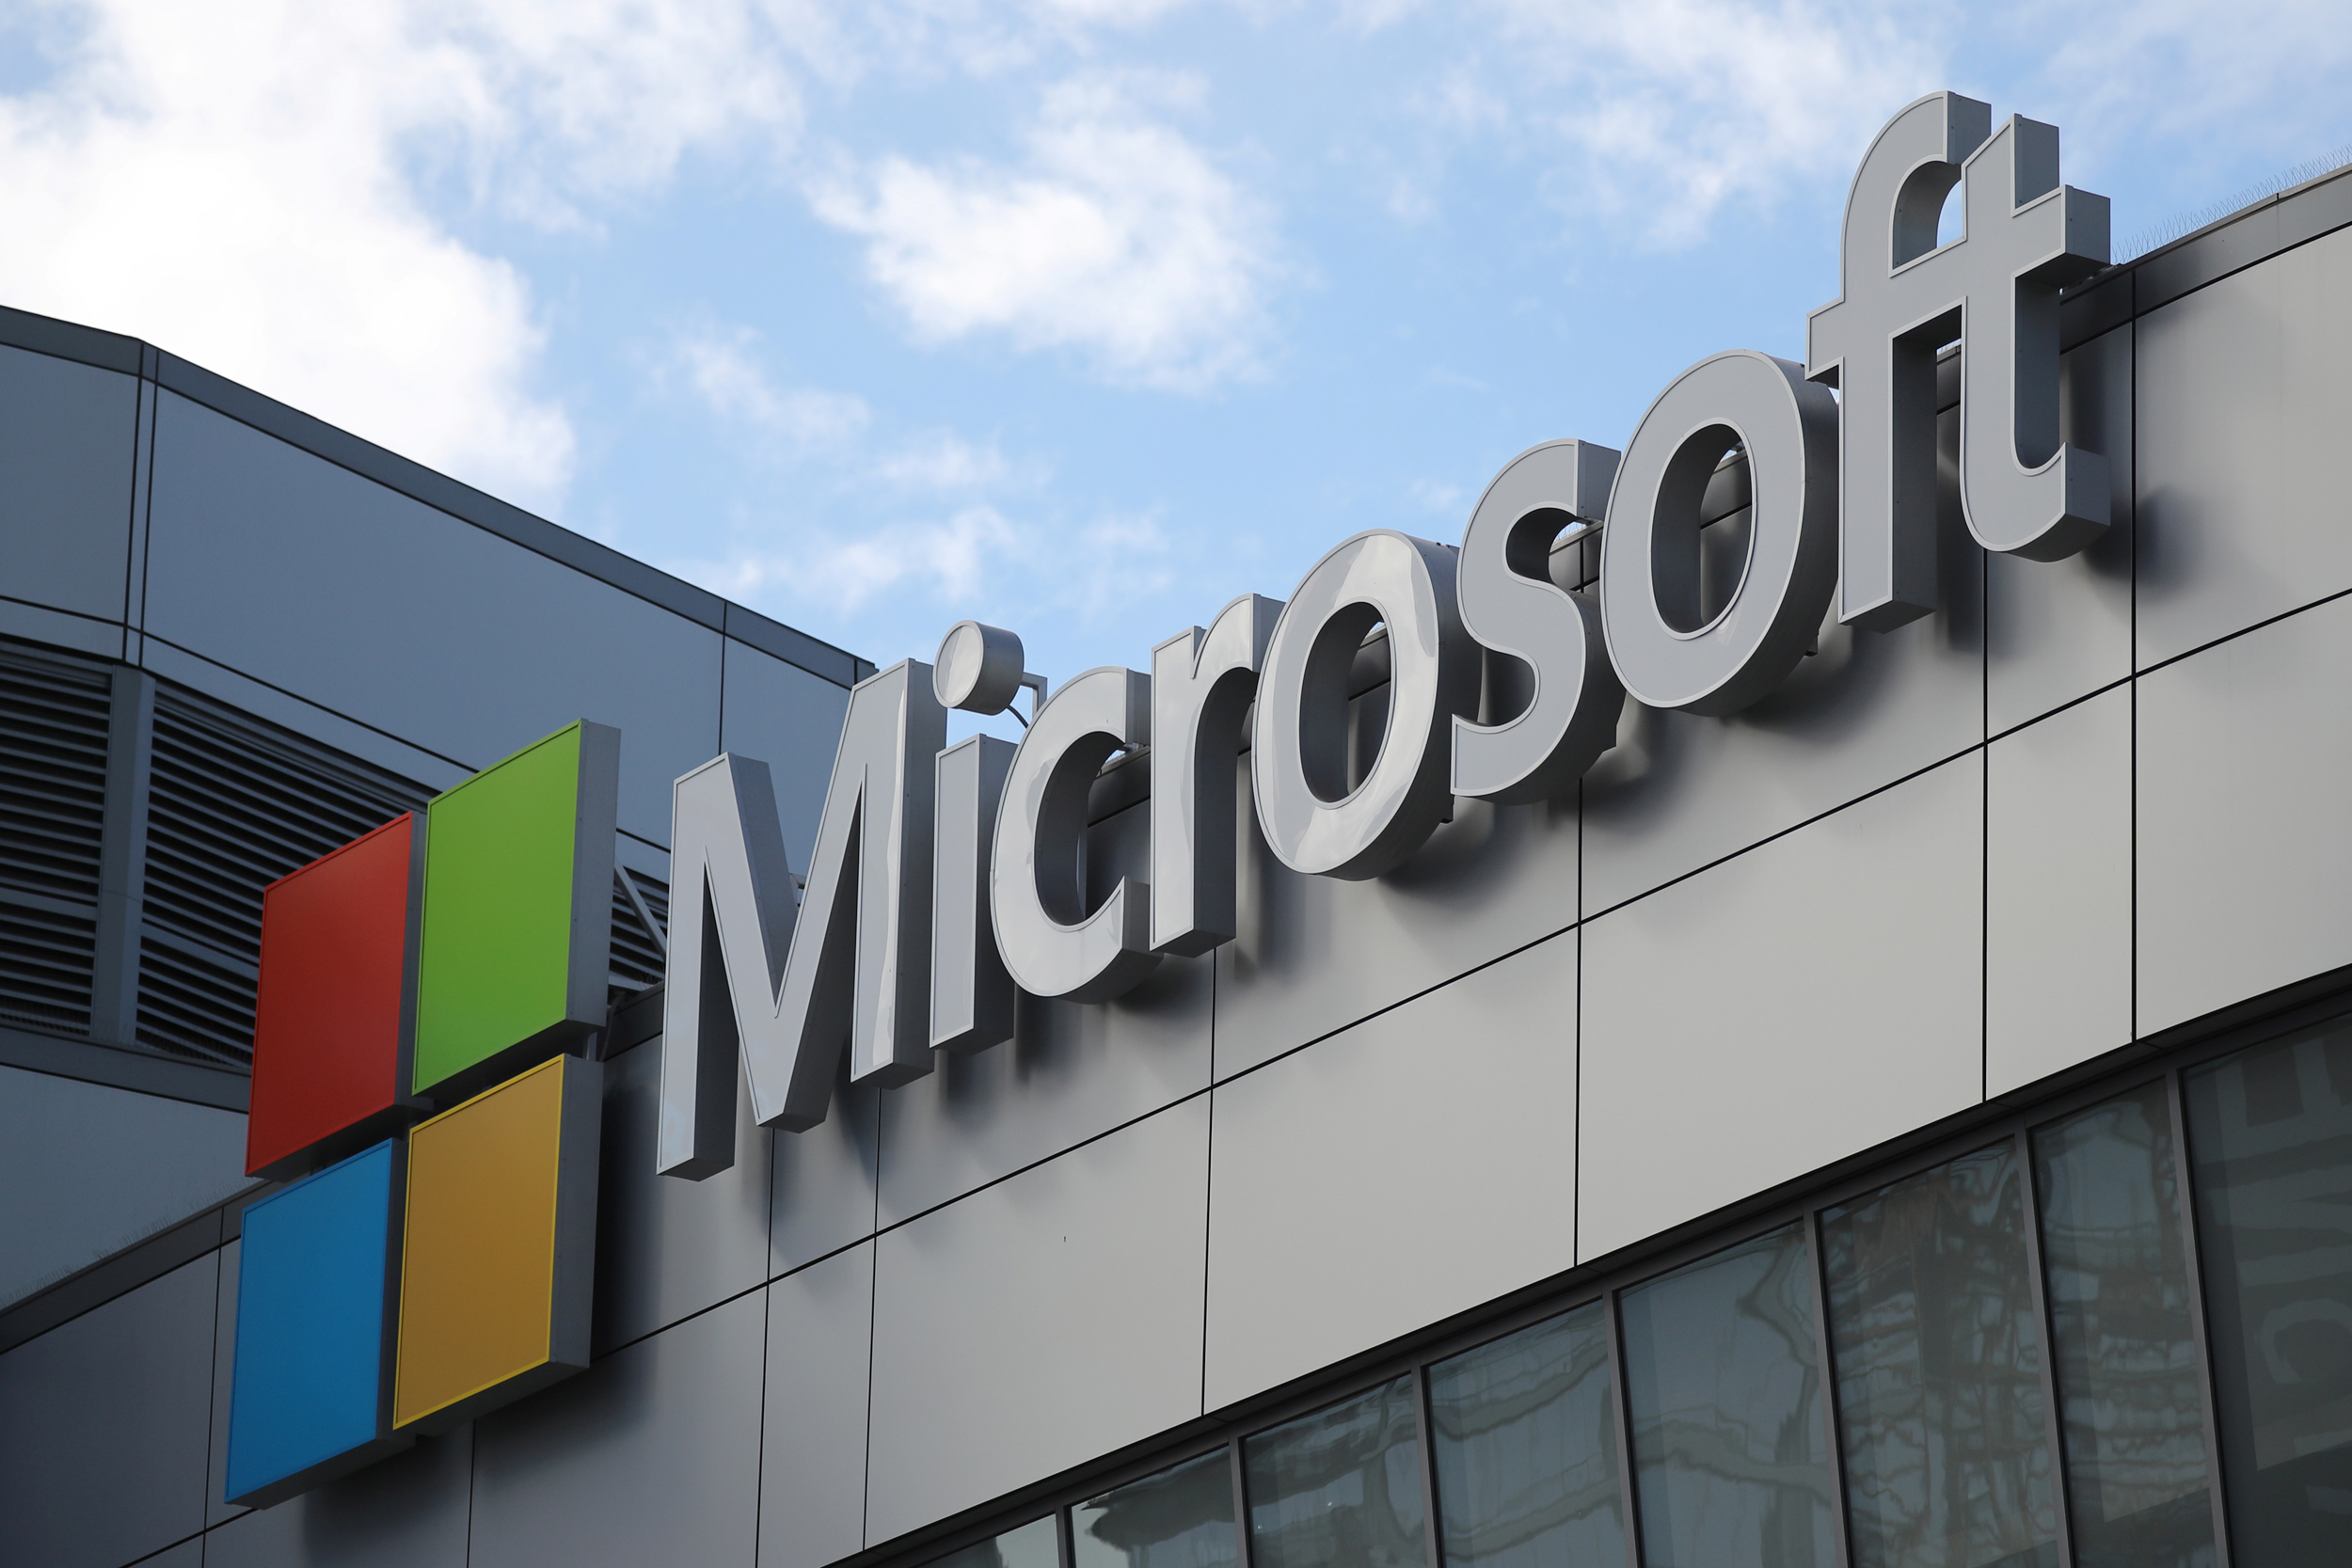 O firmă austriacă acuzată de Microsoft de crearea unui soft maliţios afirmă că softul său de spionaj ”Subzero” a fost destinat numai statelor membre UE